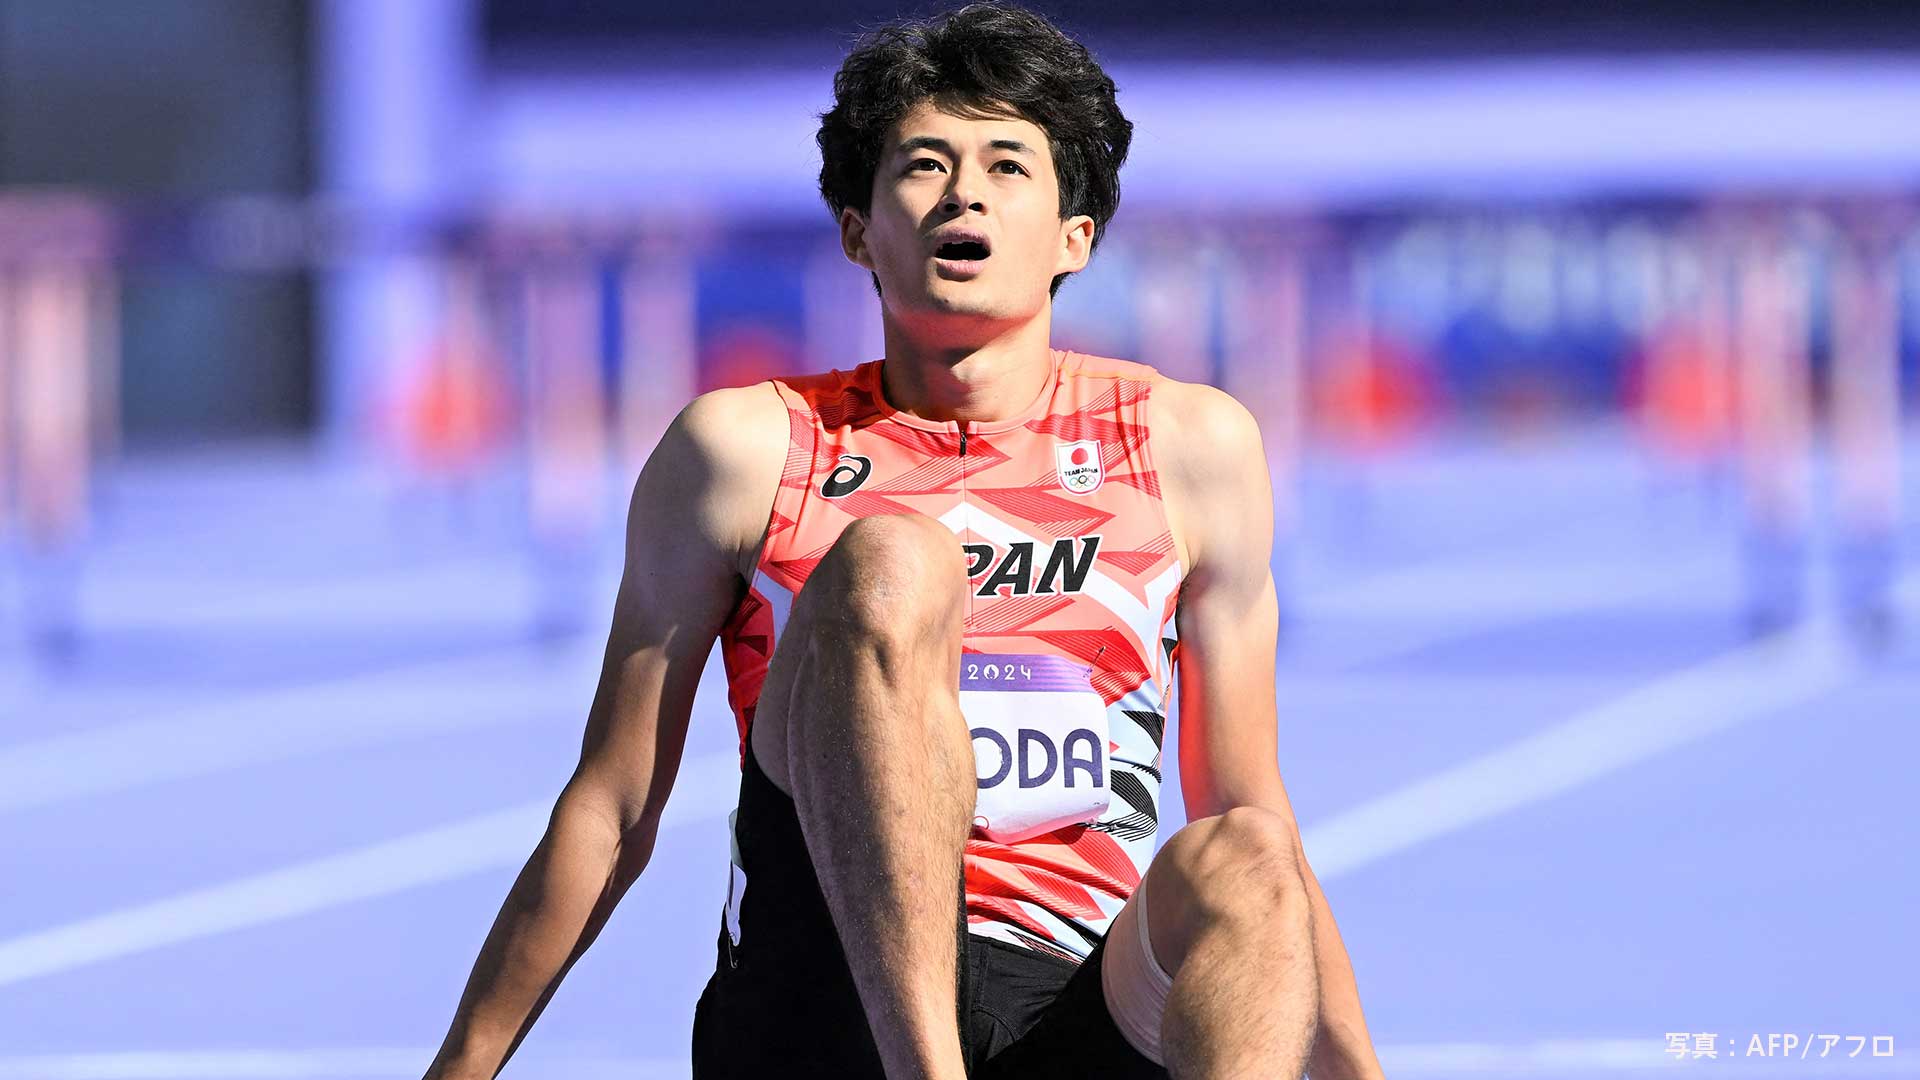 男子400mハードル 豊田兼は足を引きずりながら何とかゴール「本当に厳しい１か月間でした」【パリ五輪】